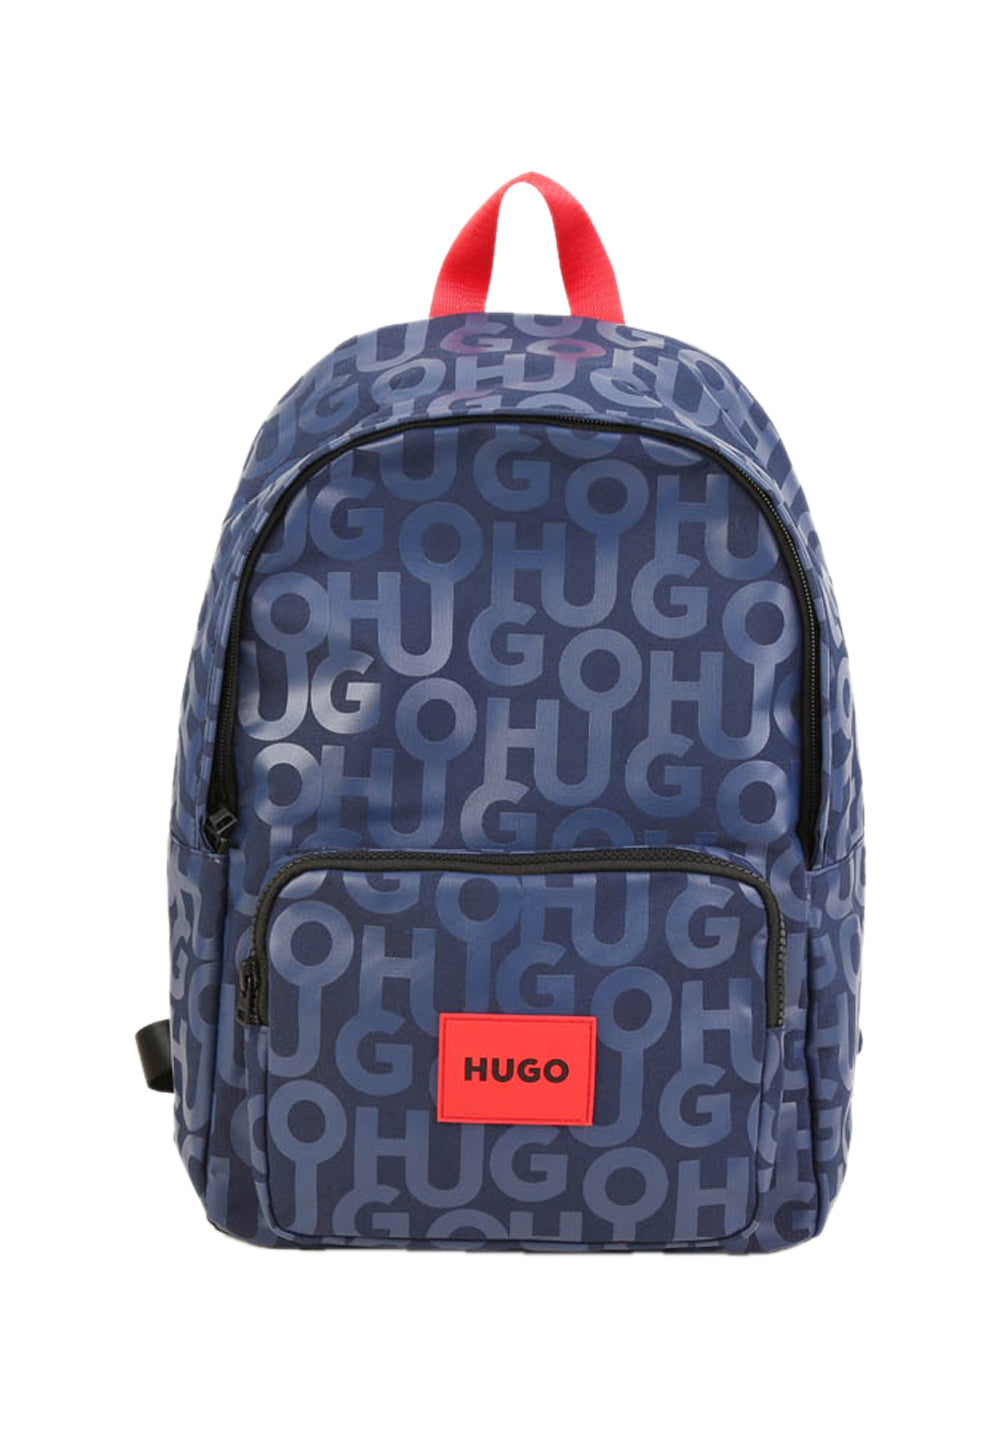 Children's backpack HUGO for a boy